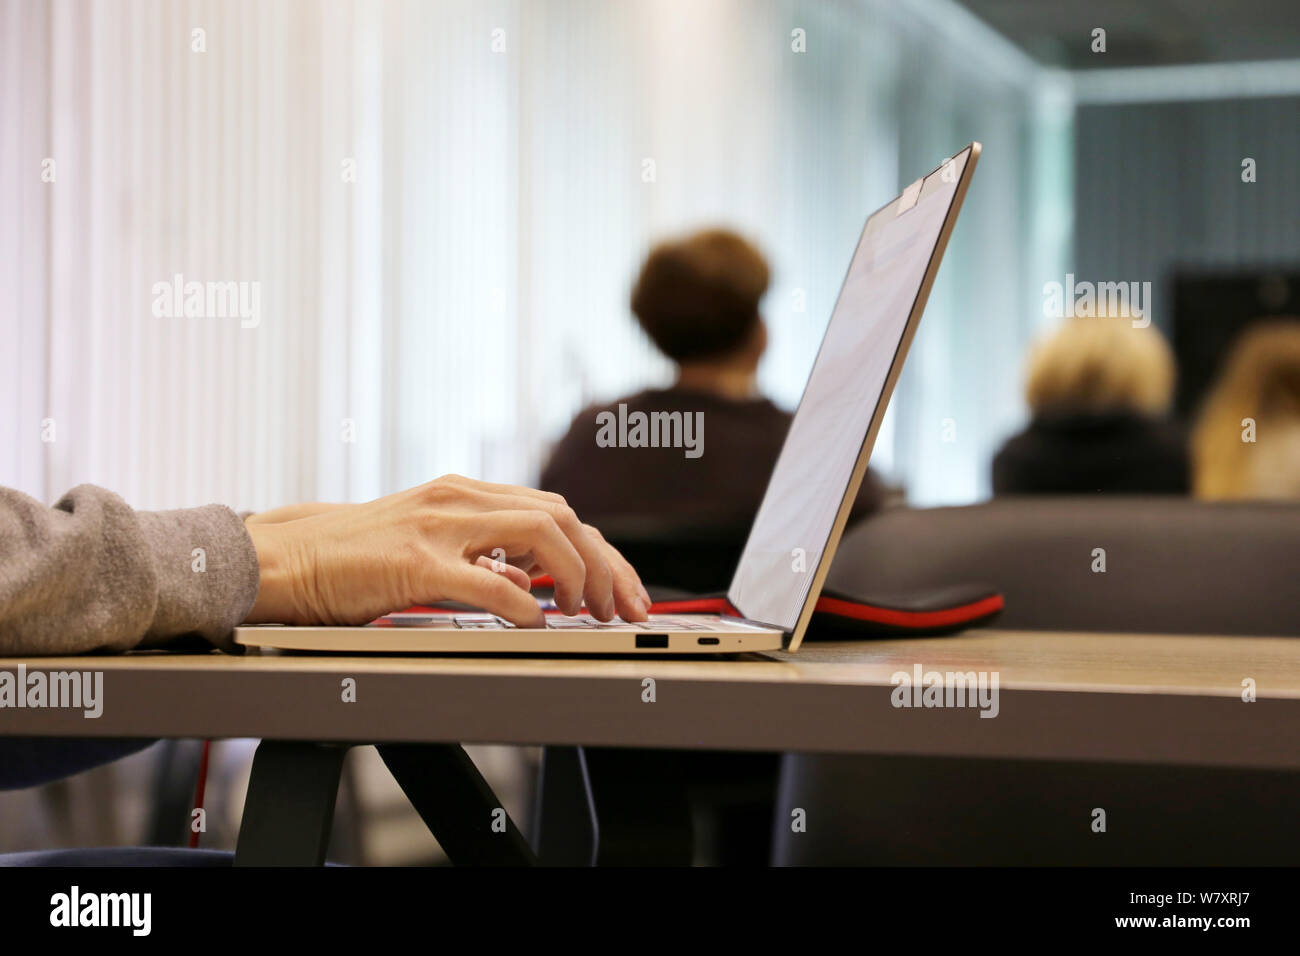 Donna che utilizza computer portatile in ufficio, mani femminili su una tastiera. Ragazza seduta con un notebook con telecamera chiusa in corrispondenza di una tabella su sfondo di persone Foto Stock